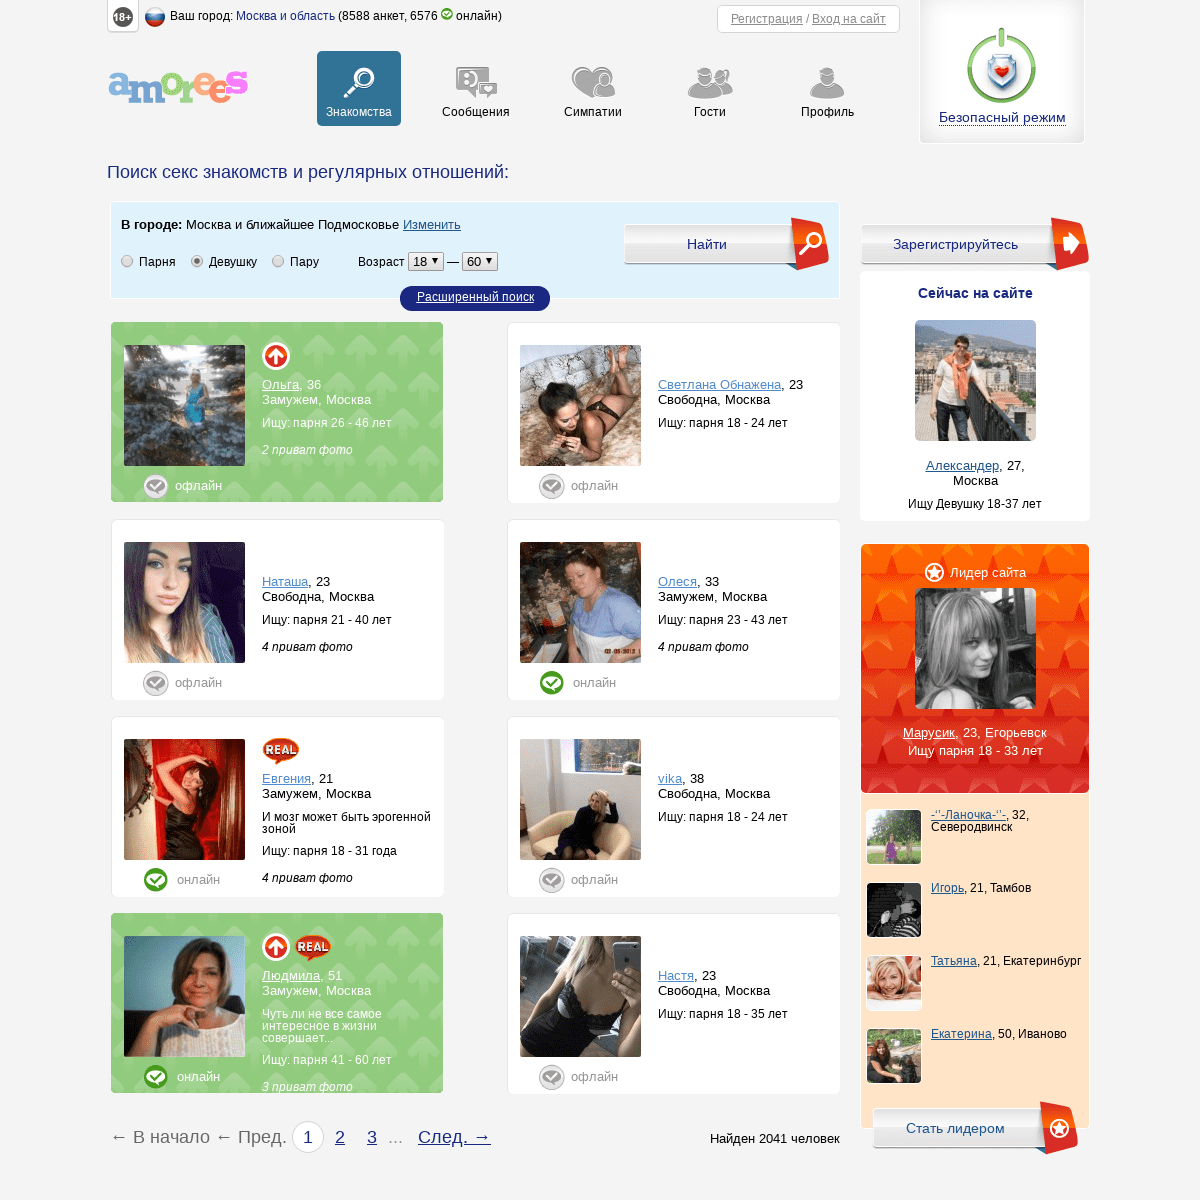 Бесплатные секс знакомства для взрослых без регистрации. Сайт интимных знакомств с девушками без обязательств онлайн.